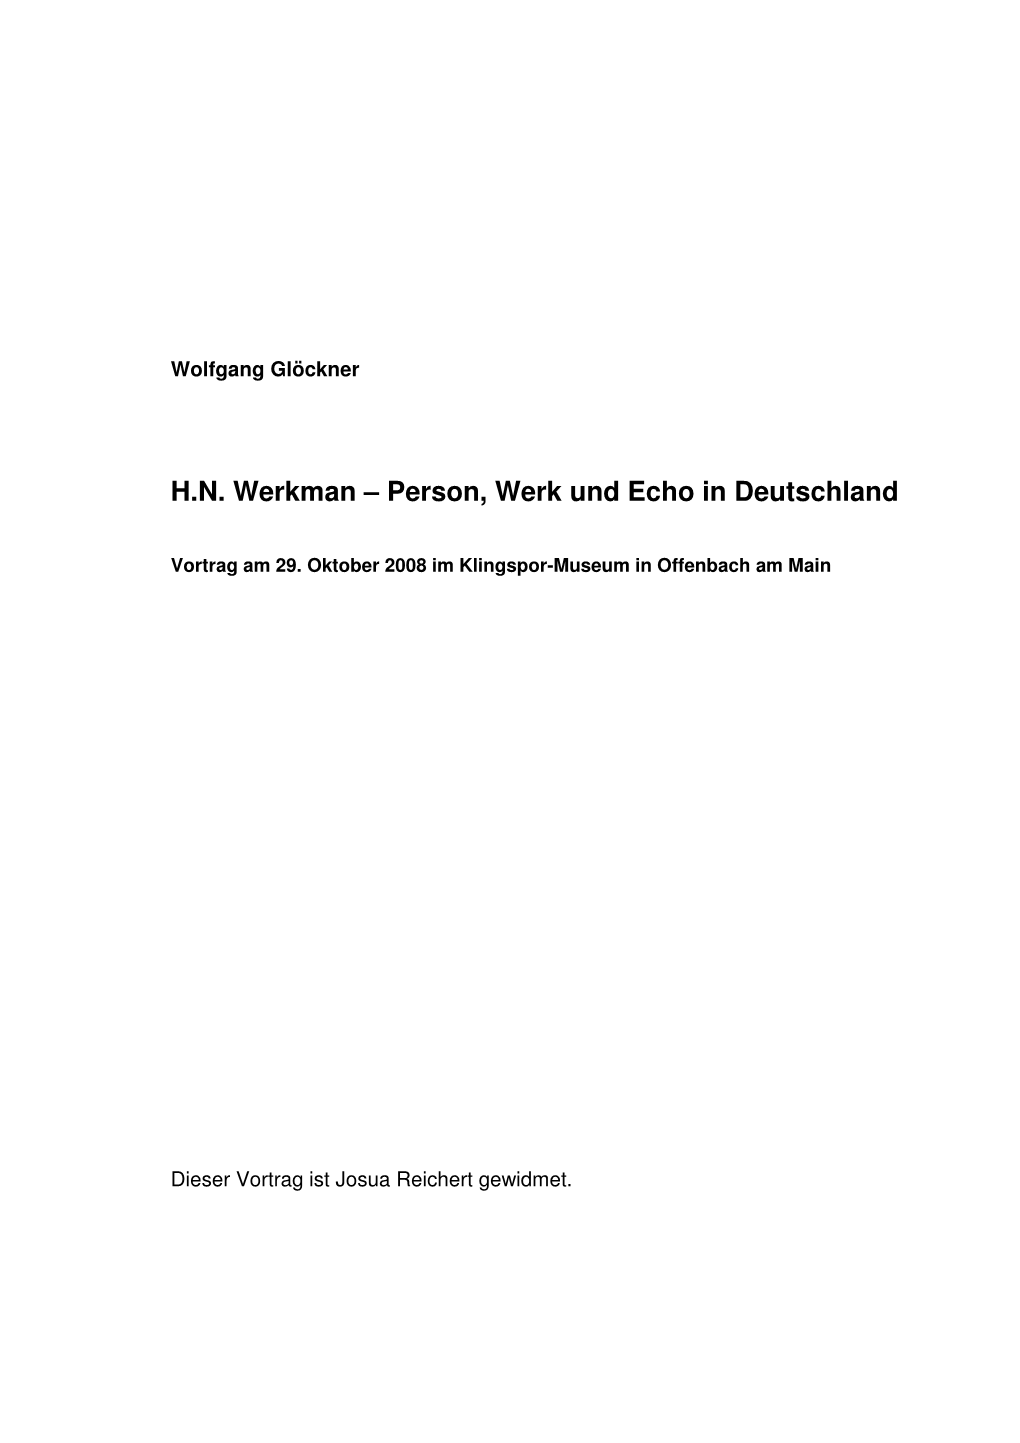 H. N. Werkman. Vortrag Von Wolfgang Gl-366Ckner